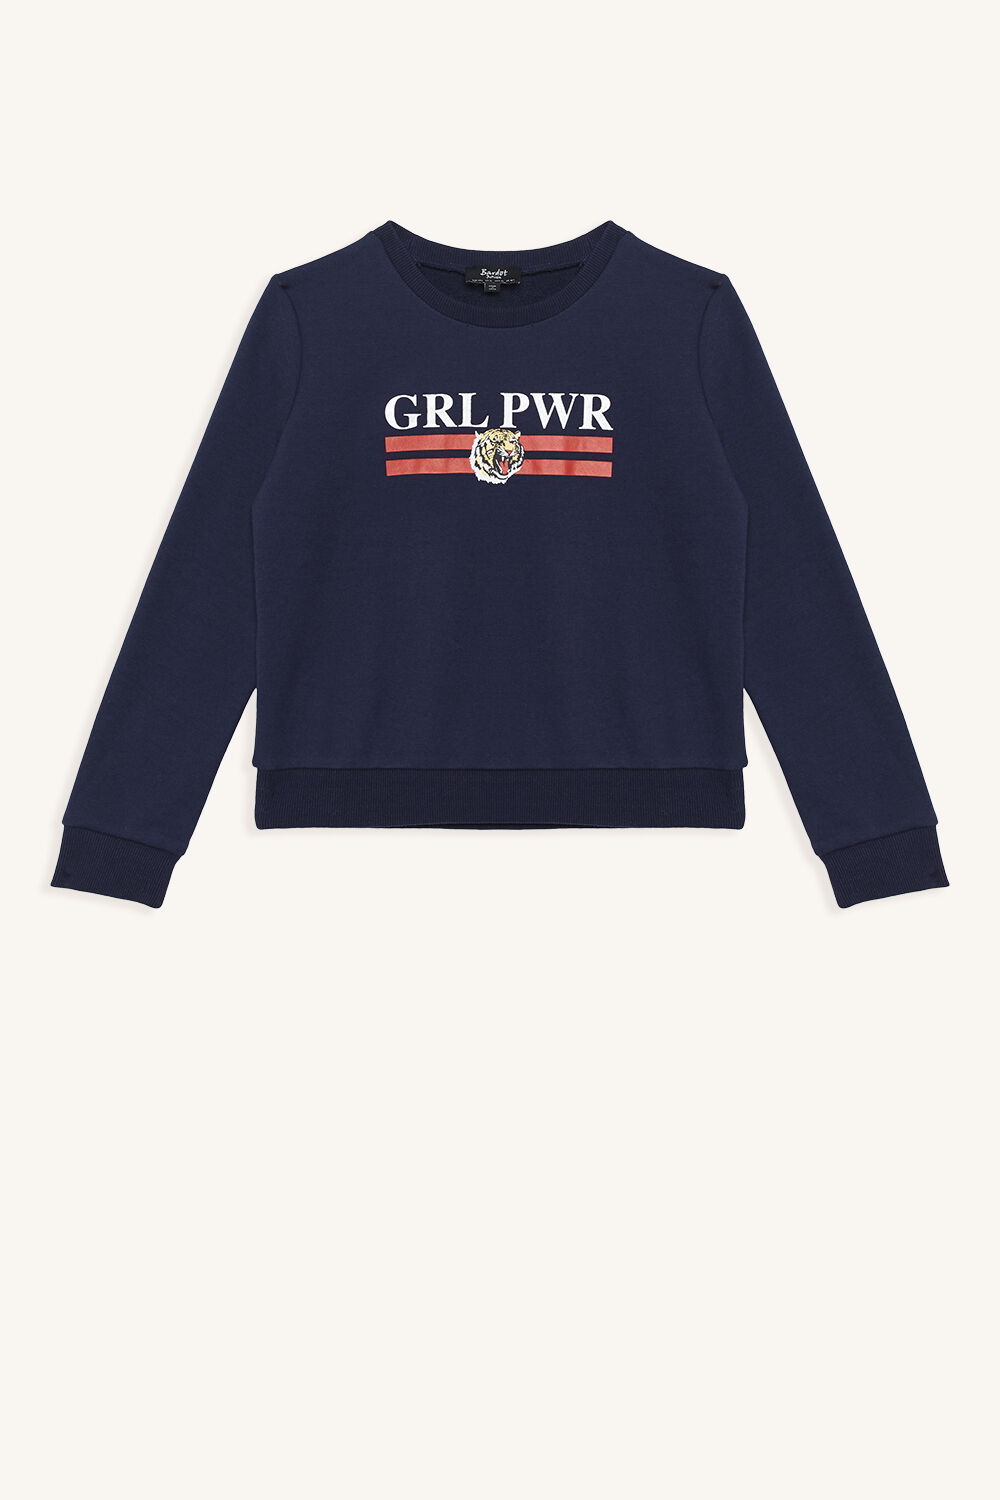 grl pwr sweater